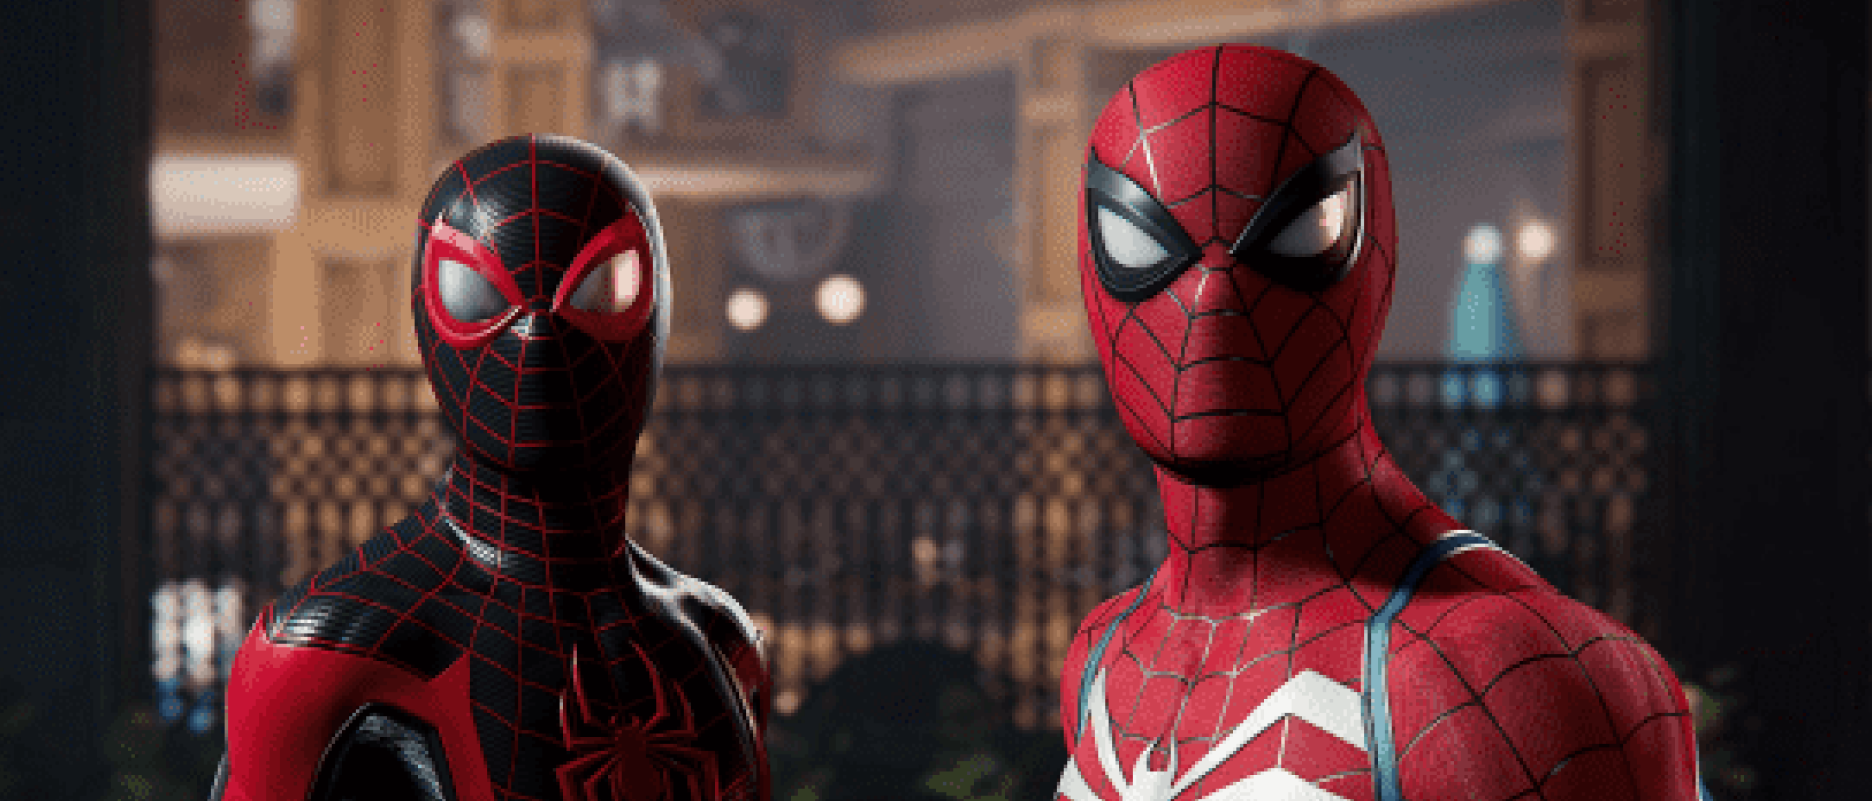 Elenco português de Marvel's Spider-Man 2 revelado!